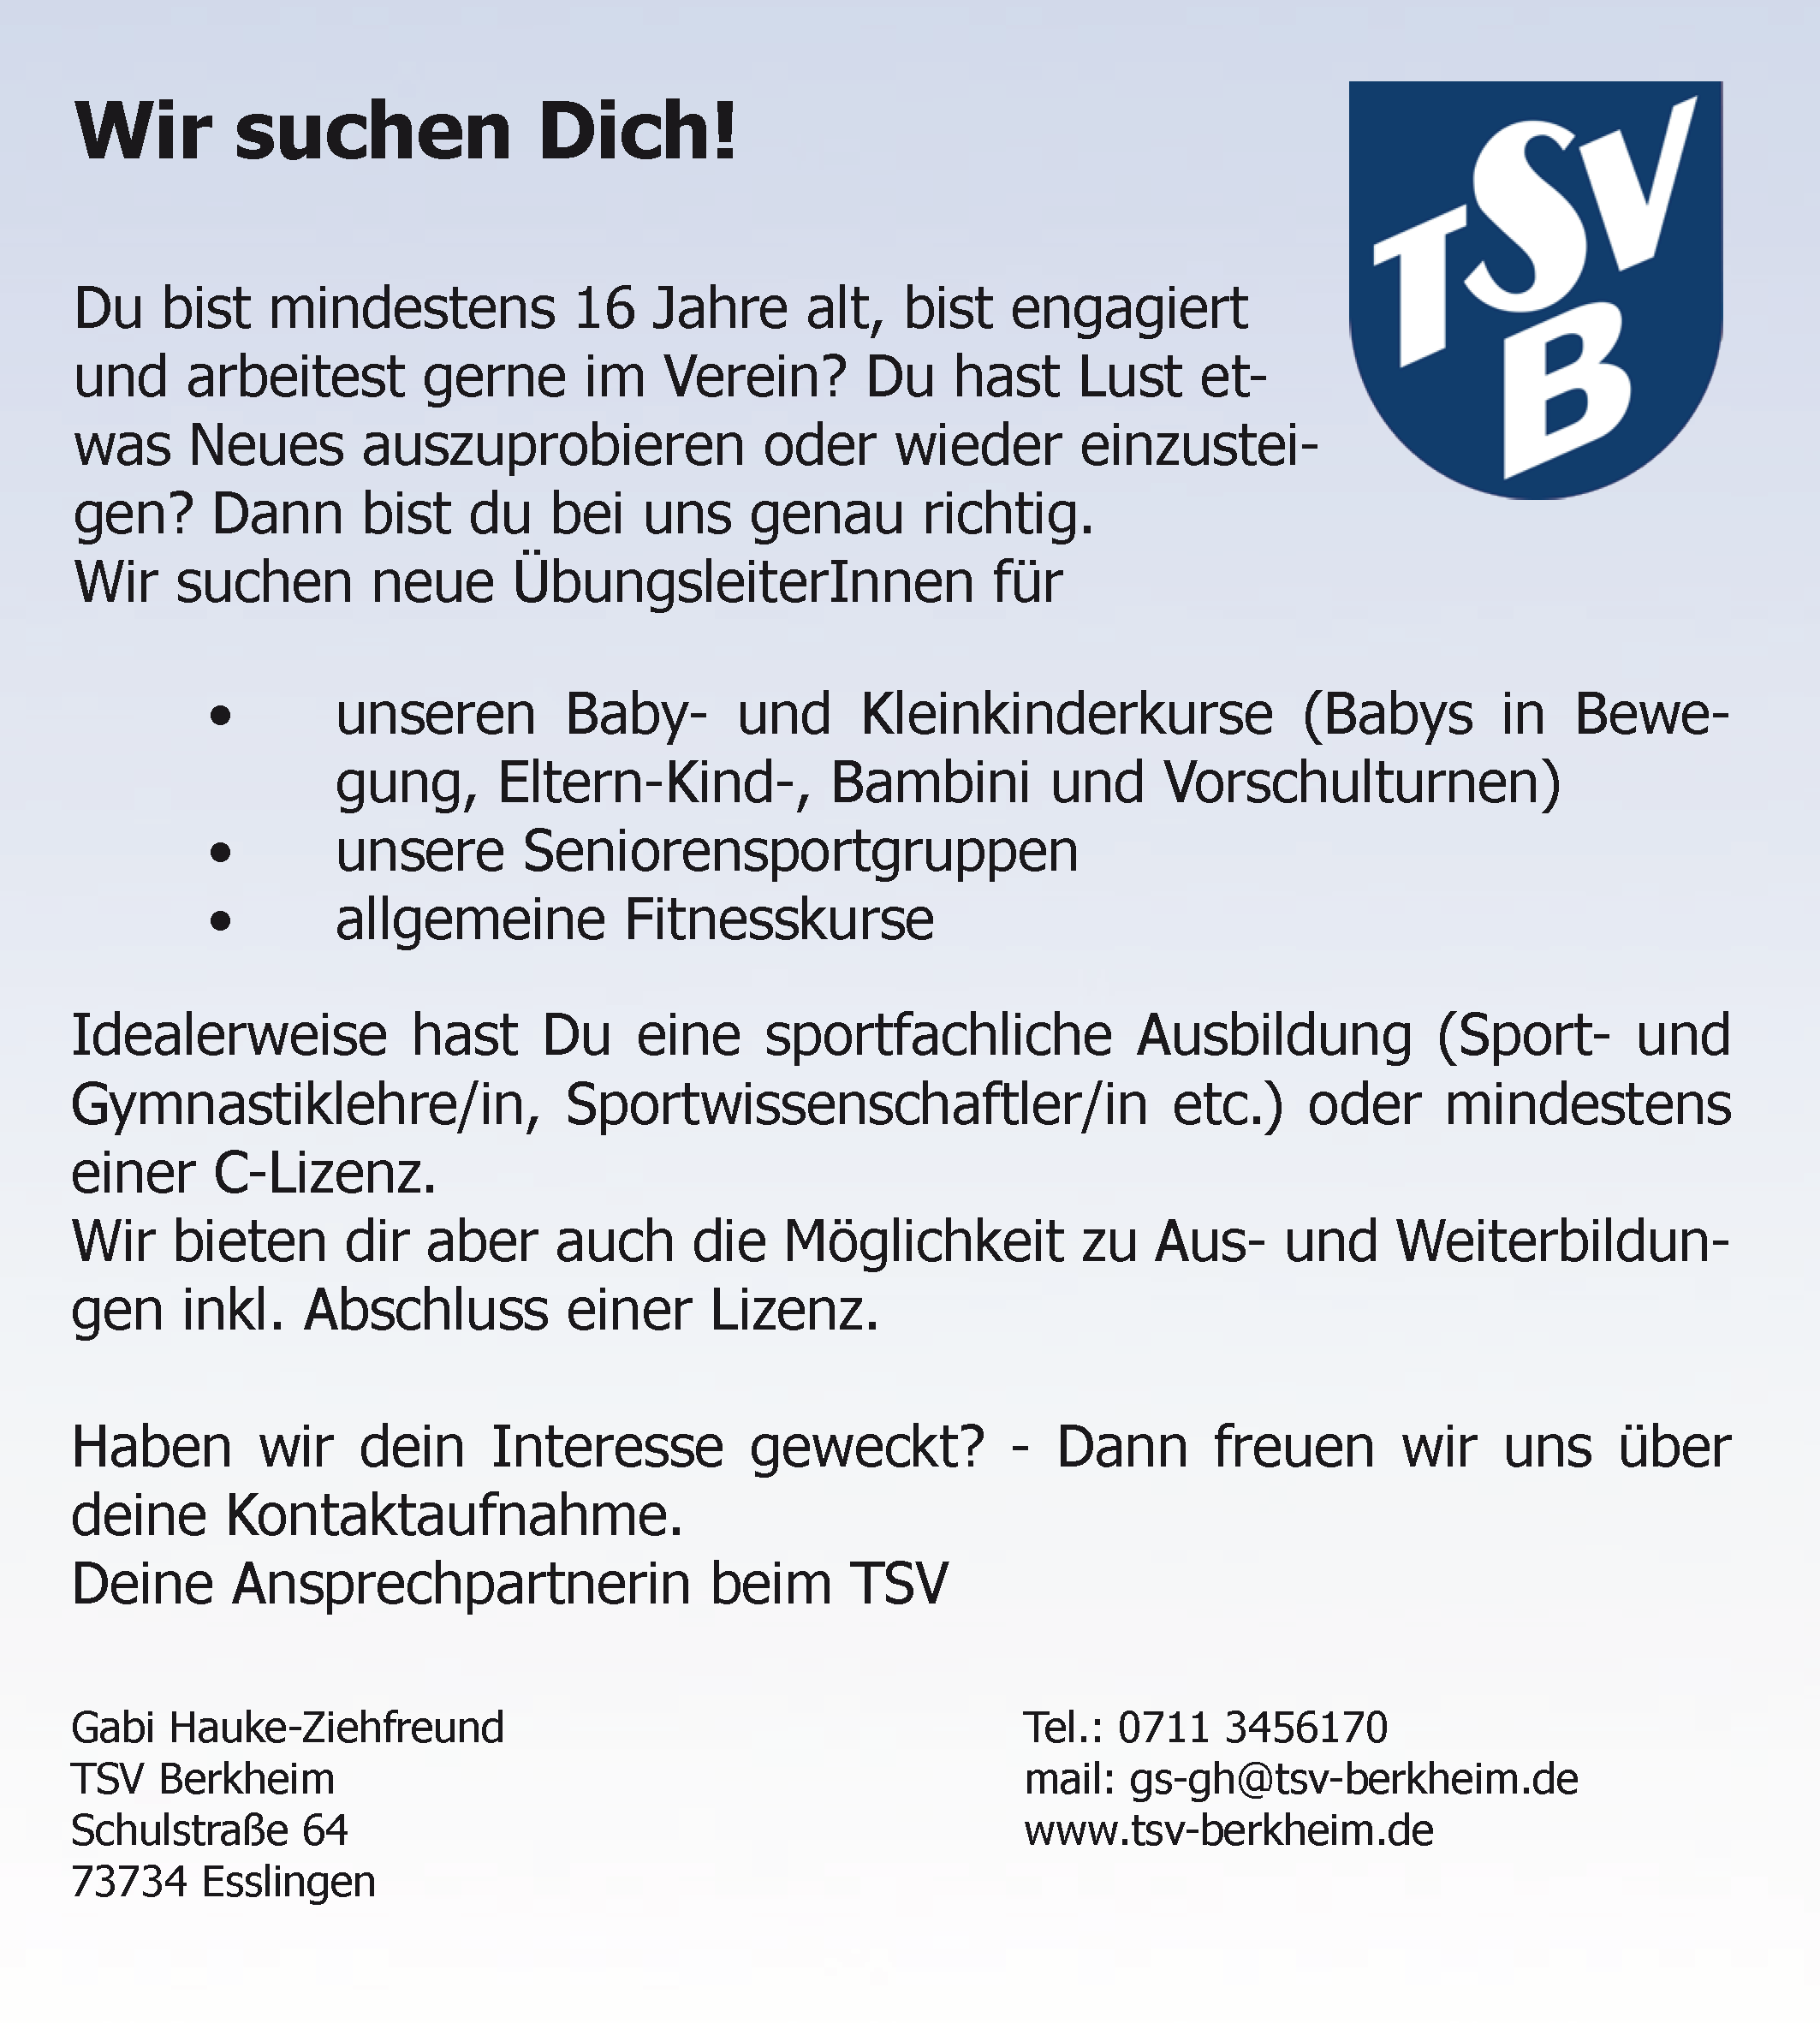 TSV Berkheim Stellenanzeige 2spaltig 07.2021